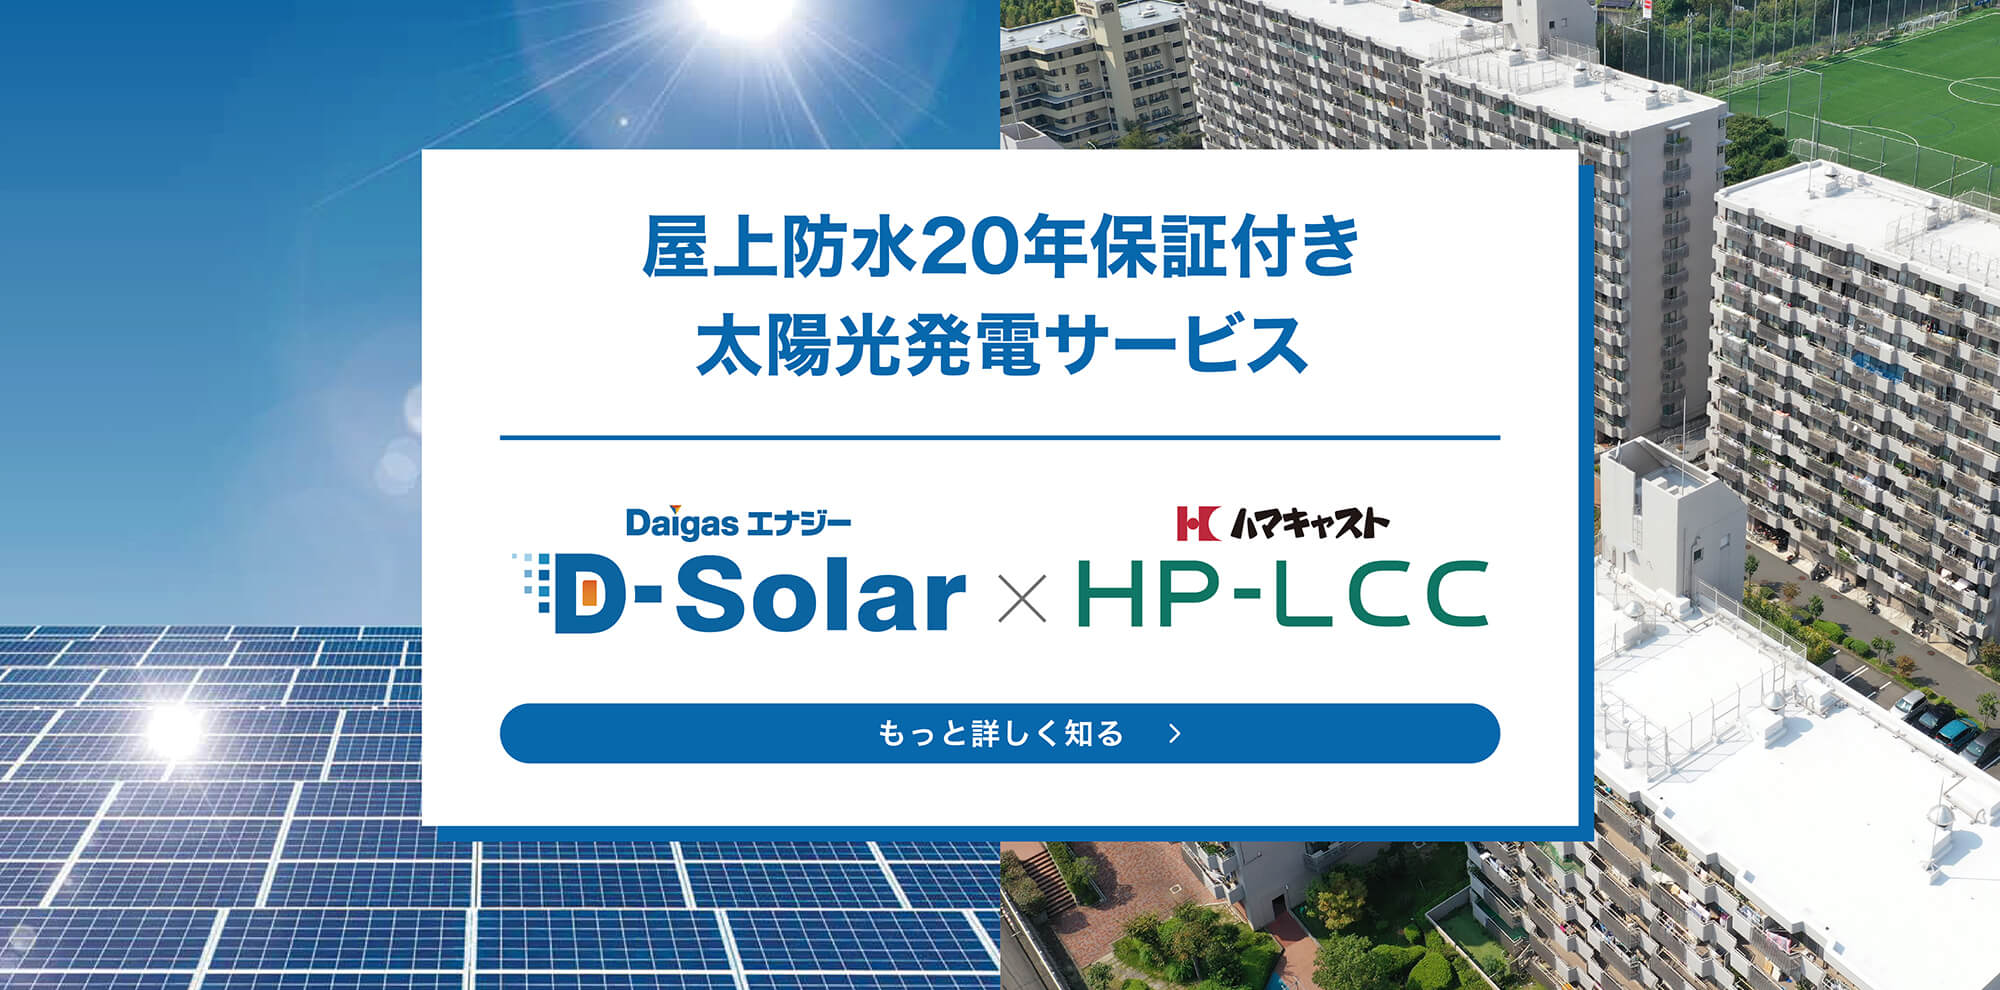 屋上防水20年保証付き太陽光発電サービス「DaigasエナジーD-Solar×ハマキャストHP-LCC【もっと詳しく知る】」